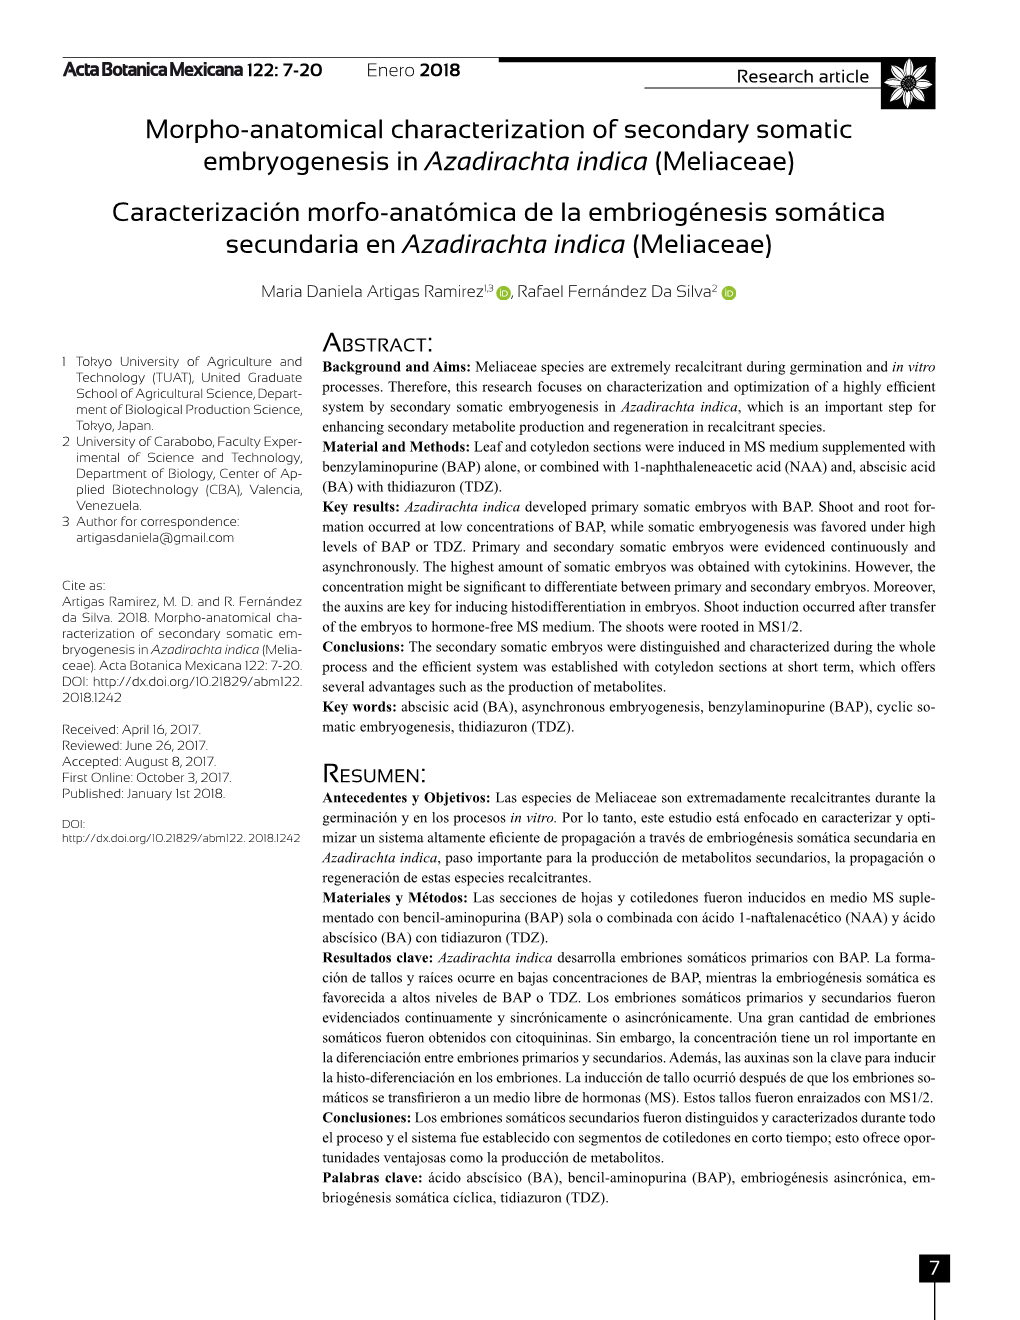 Azadirachta Indica (Meliaceae) Caracterización Morfo-Anatómica De La Embriogénesis Somática Secundaria En Azadirachta Indica (Meliaceae)